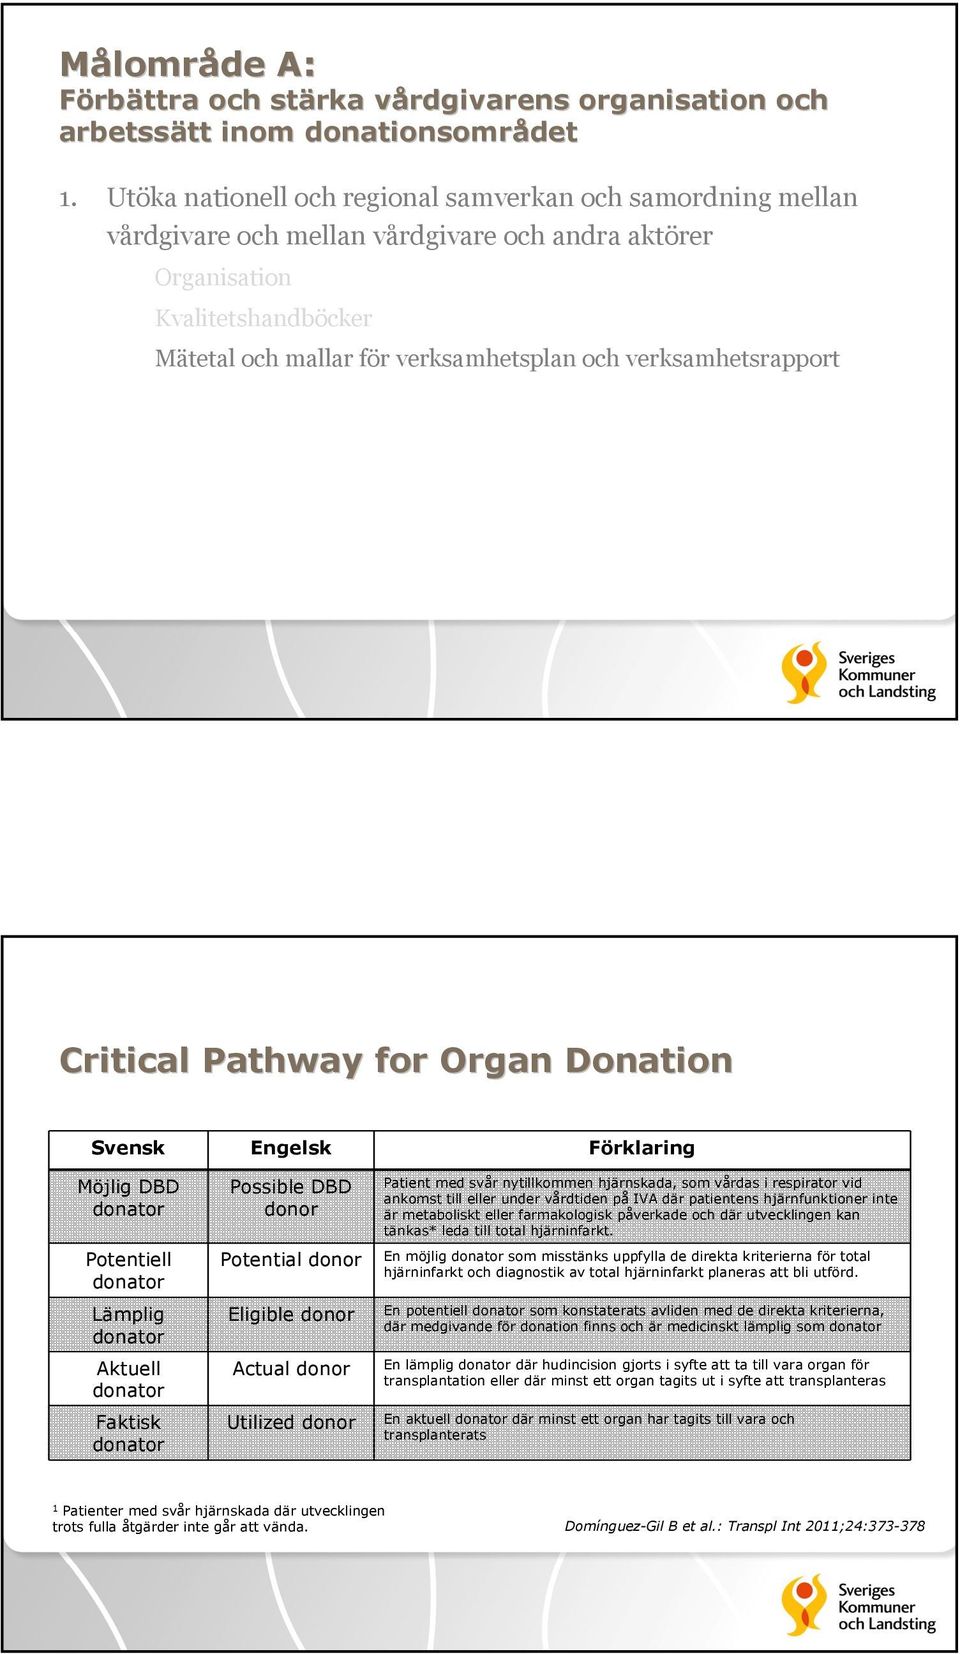 verksamhetsrapport Critical Pathway for Organ Donation Svensk Engelsk Förklaring Möjlig DBD donator Potentiell donator Lämplig donator Aktuell donator Faktisk donator Possible DBD donor Potential